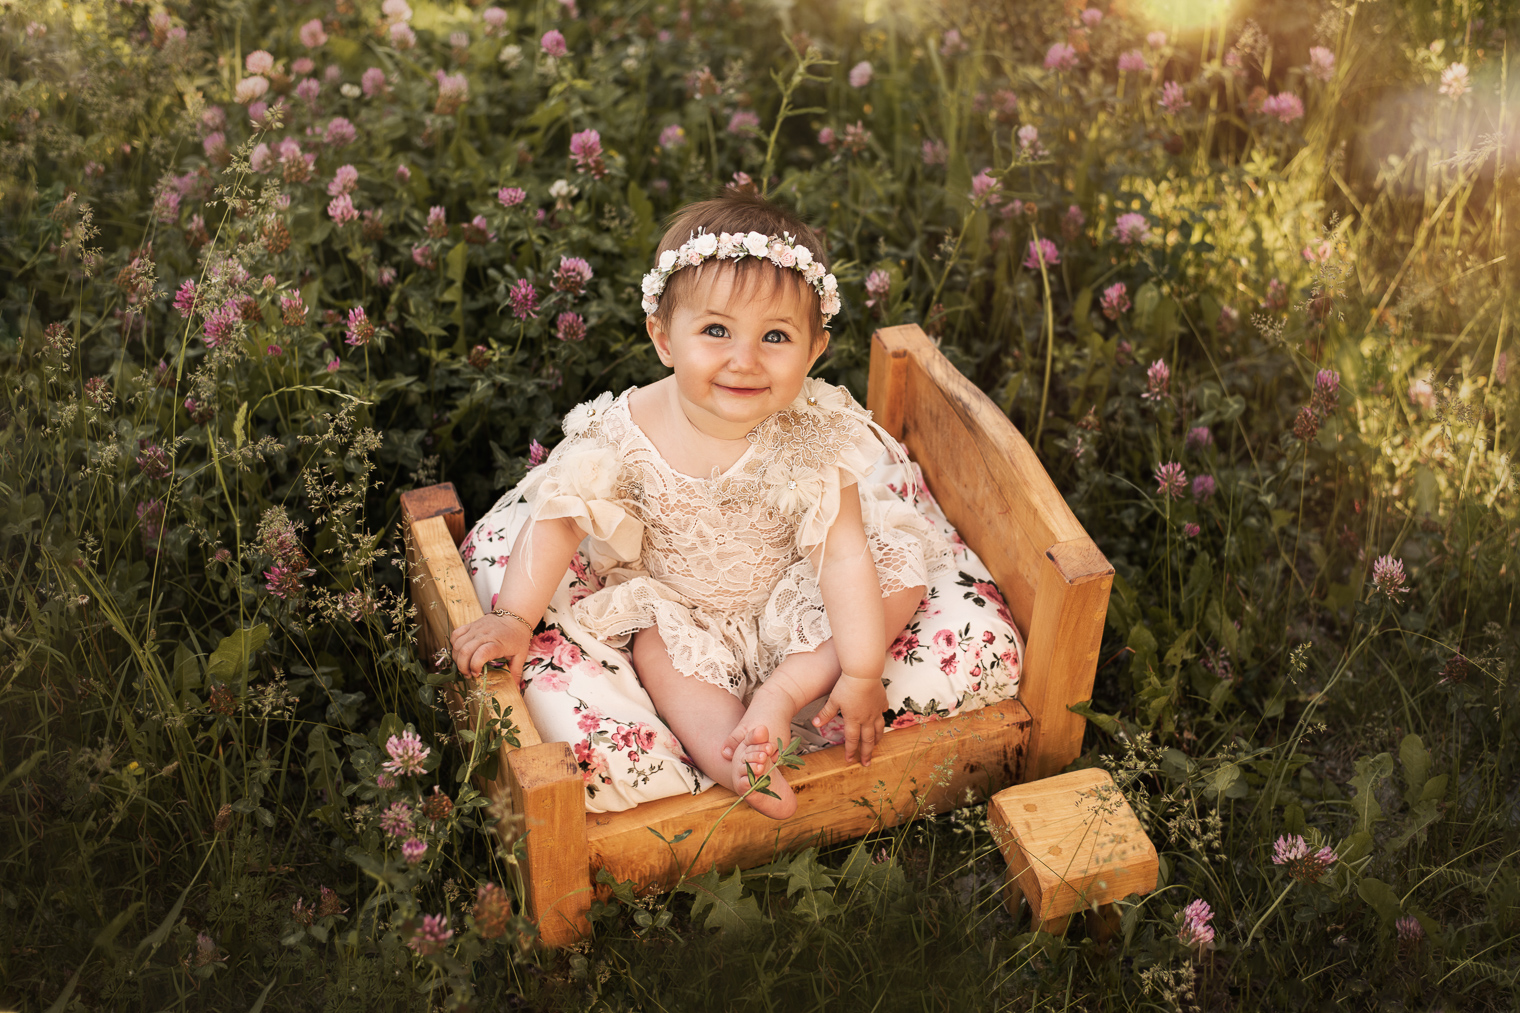 Bébé fille qui sourit, elle a une robe en dentelle, une couronne de fleurs et elle est assise sur un petit lit en bois au milieu d'un champ de fleurs de trèfle